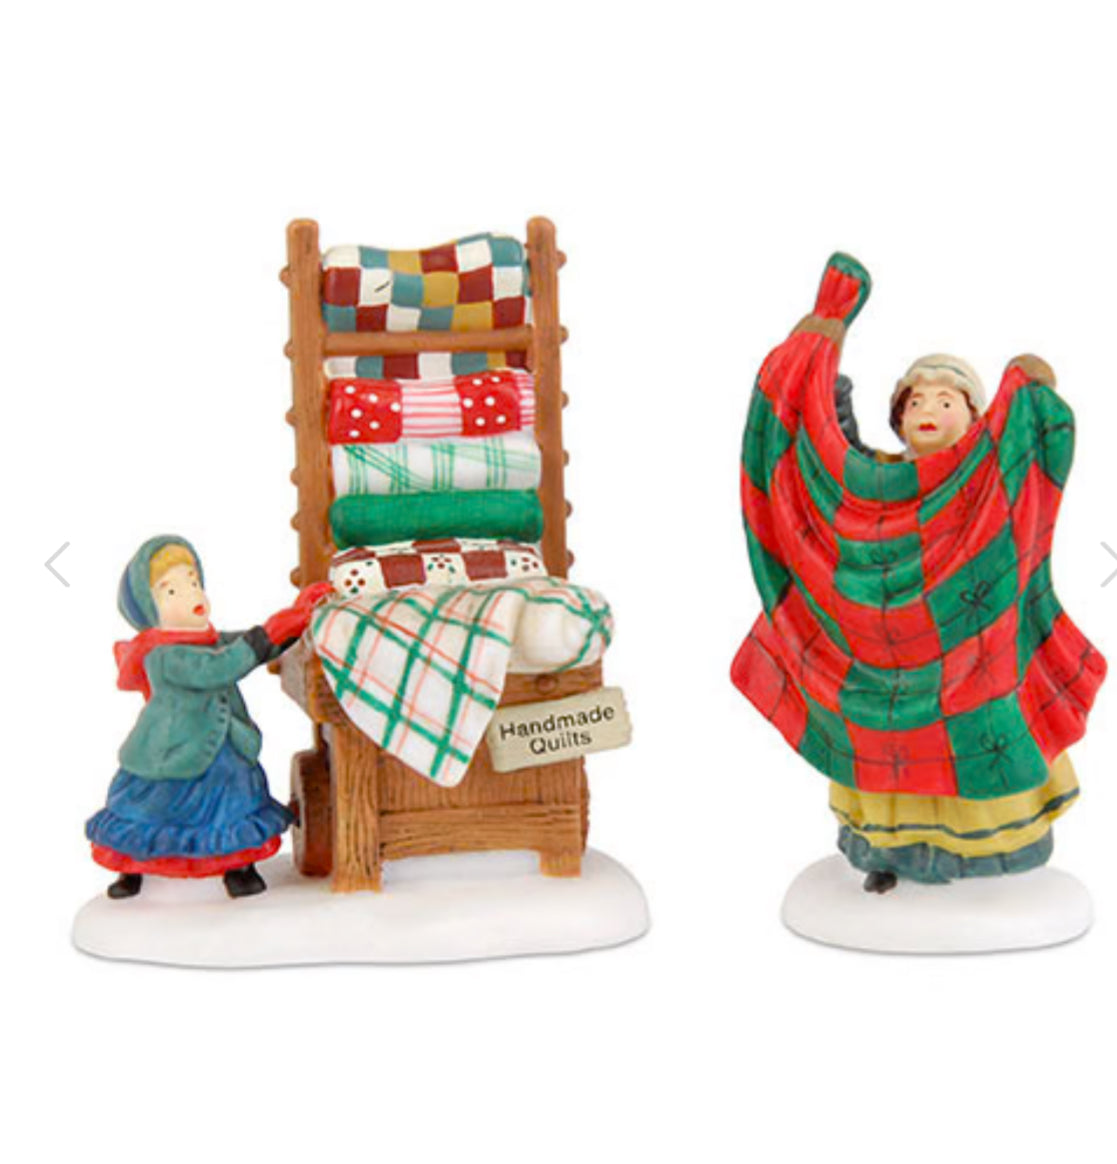 Department 56 - Heritage Village - Christmas Bazaar...Handmade Quilts